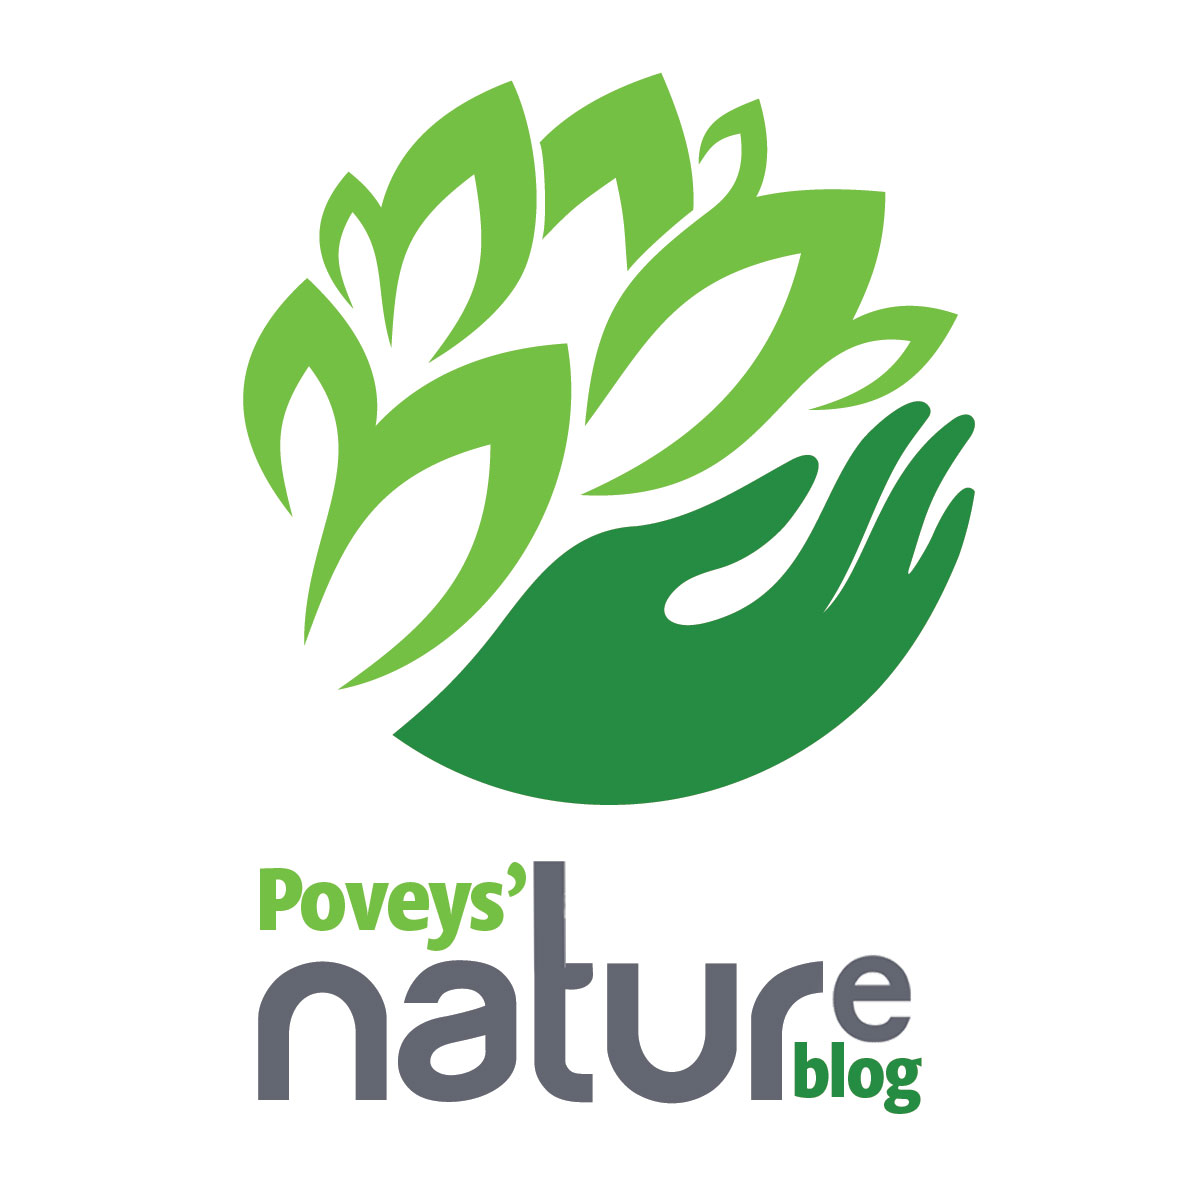 Poveys Nature Blog